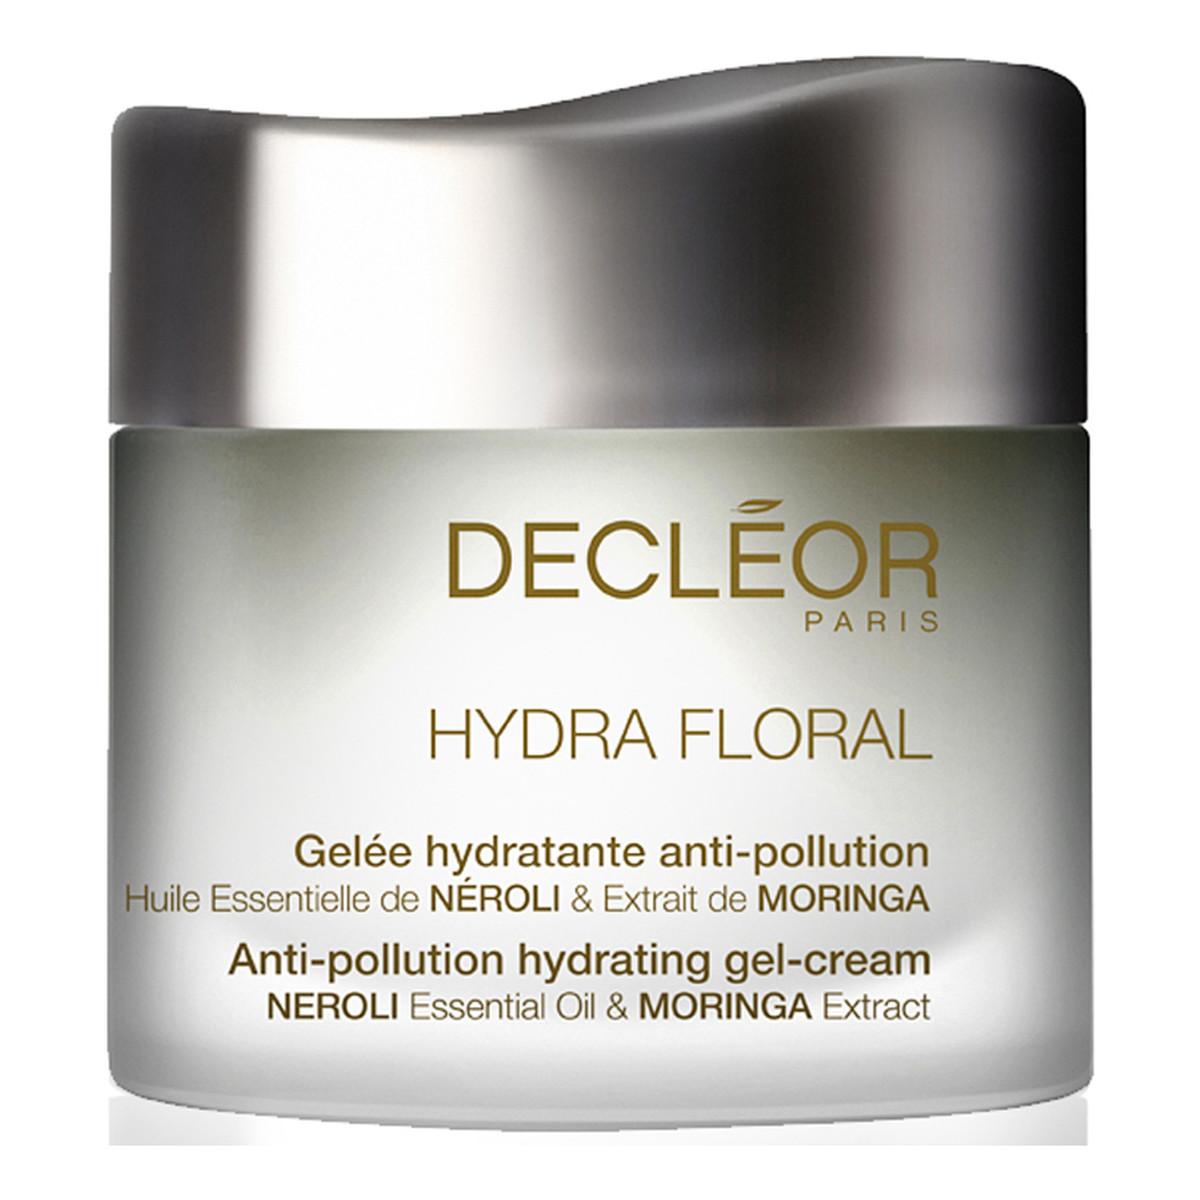 Decleor Hydra Floral żel-krem do twarzy przeciwko zanieczyszczeniom 50ml